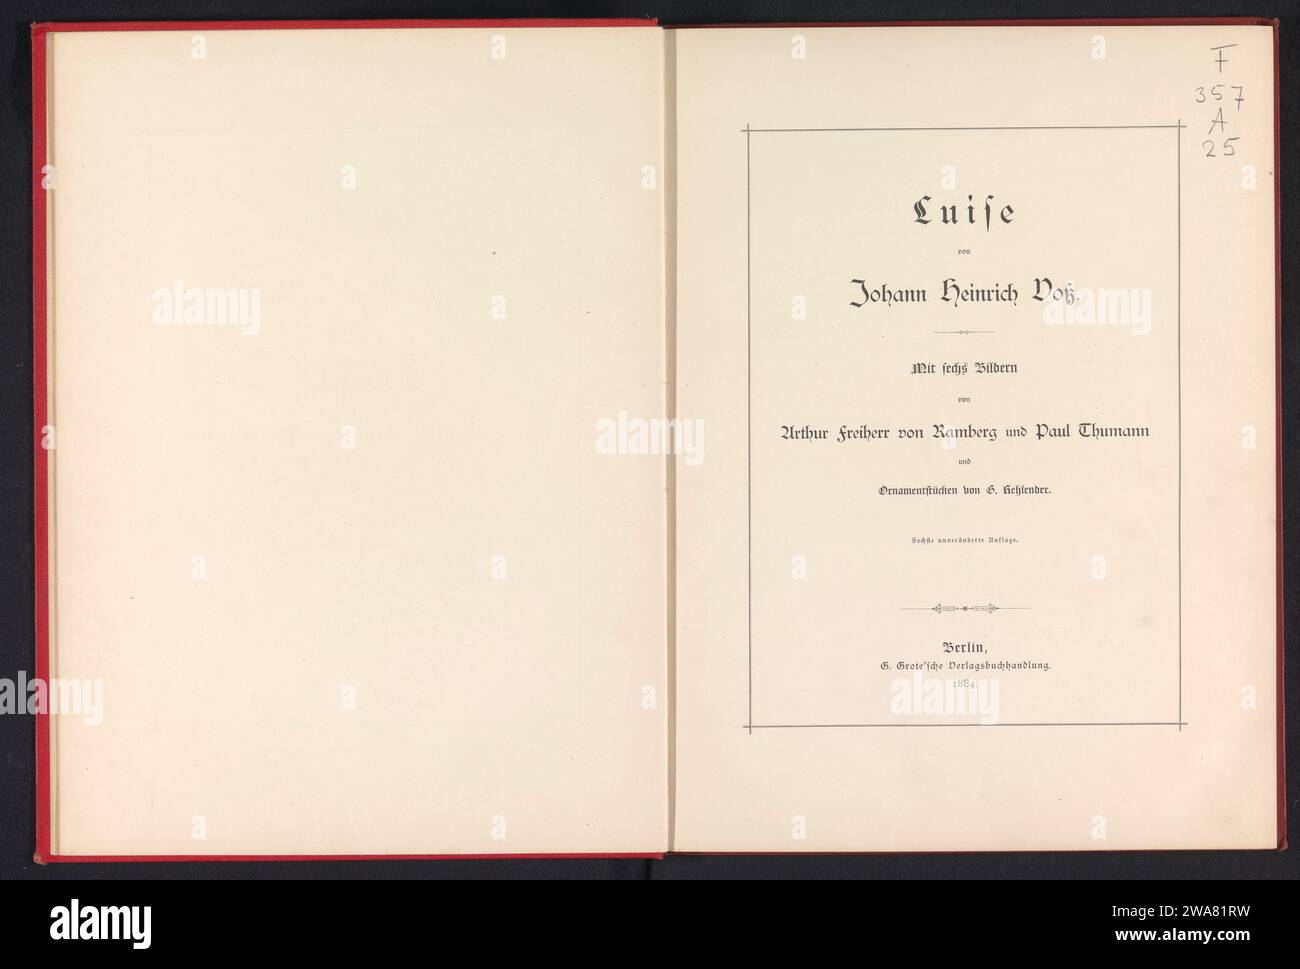 Luise, Johann Heinrich Voss, 1884 book  Berlin paper. cardboard. linen (material) printing Stock Photo